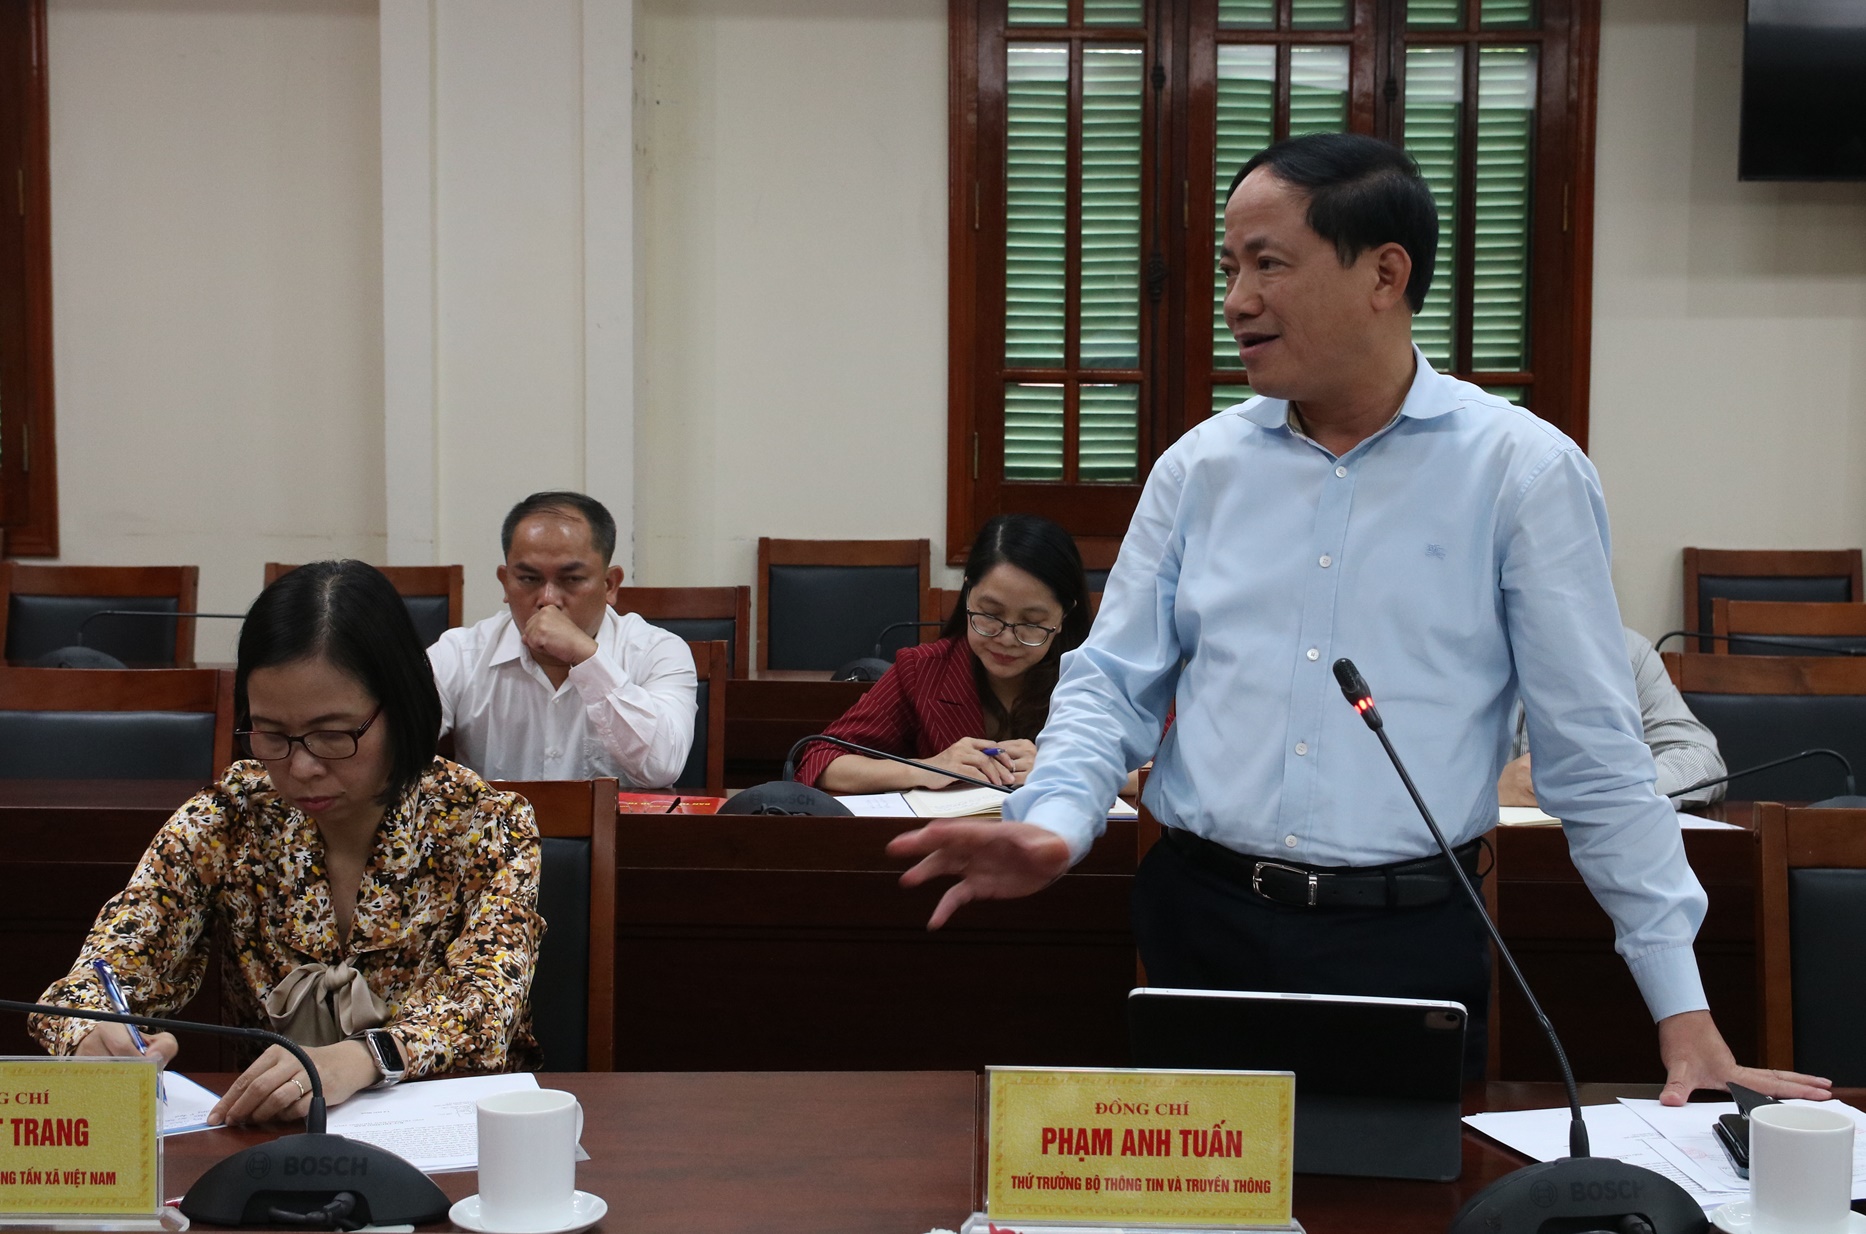 Đồng chí Phạm Anh Tuấn, Thứ trưởng Bộ Thông tin và Truyền thông phát biểu tại Hội nghị.